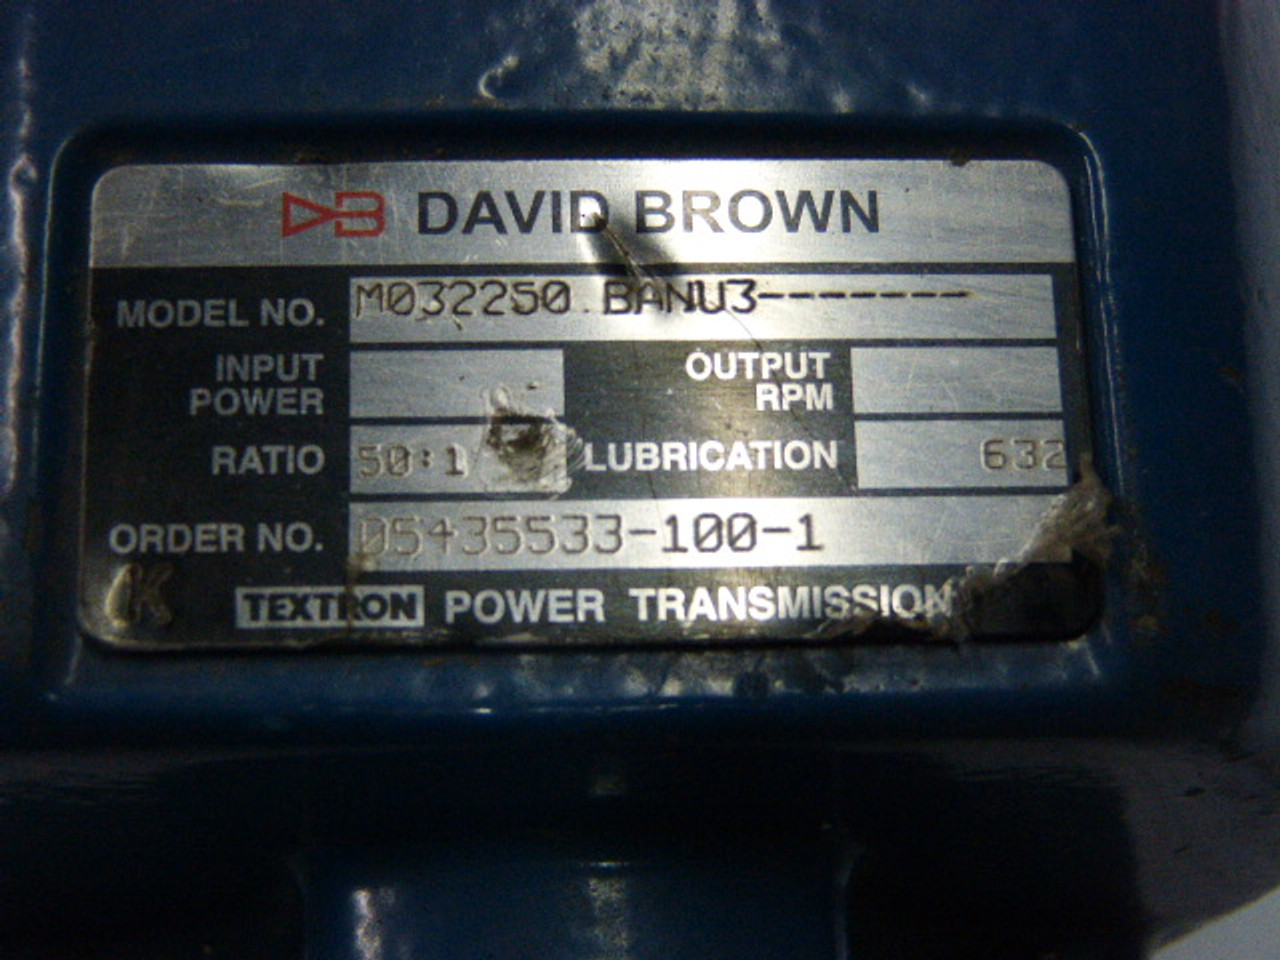 David Brown M032250BANU3 Gear Box 50:1 Ratio ! NOP !